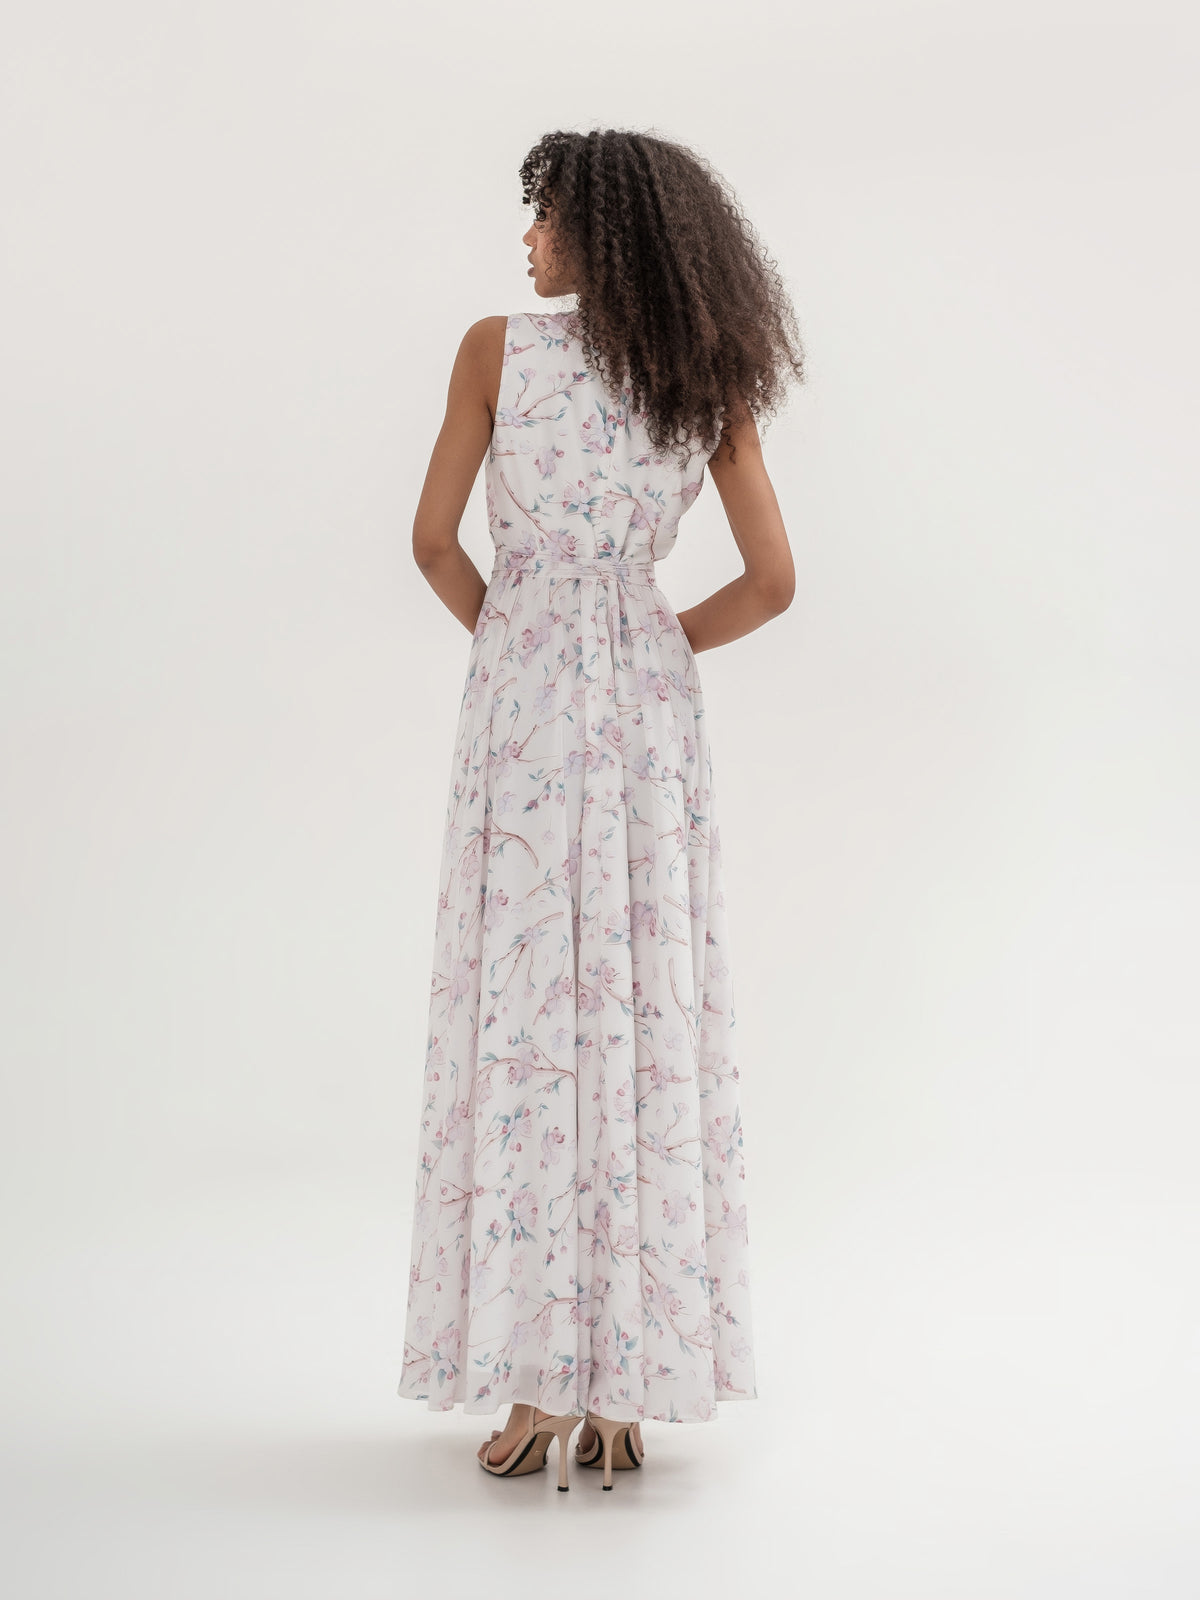 Light apple blossoms print dress V neckline with lining back side